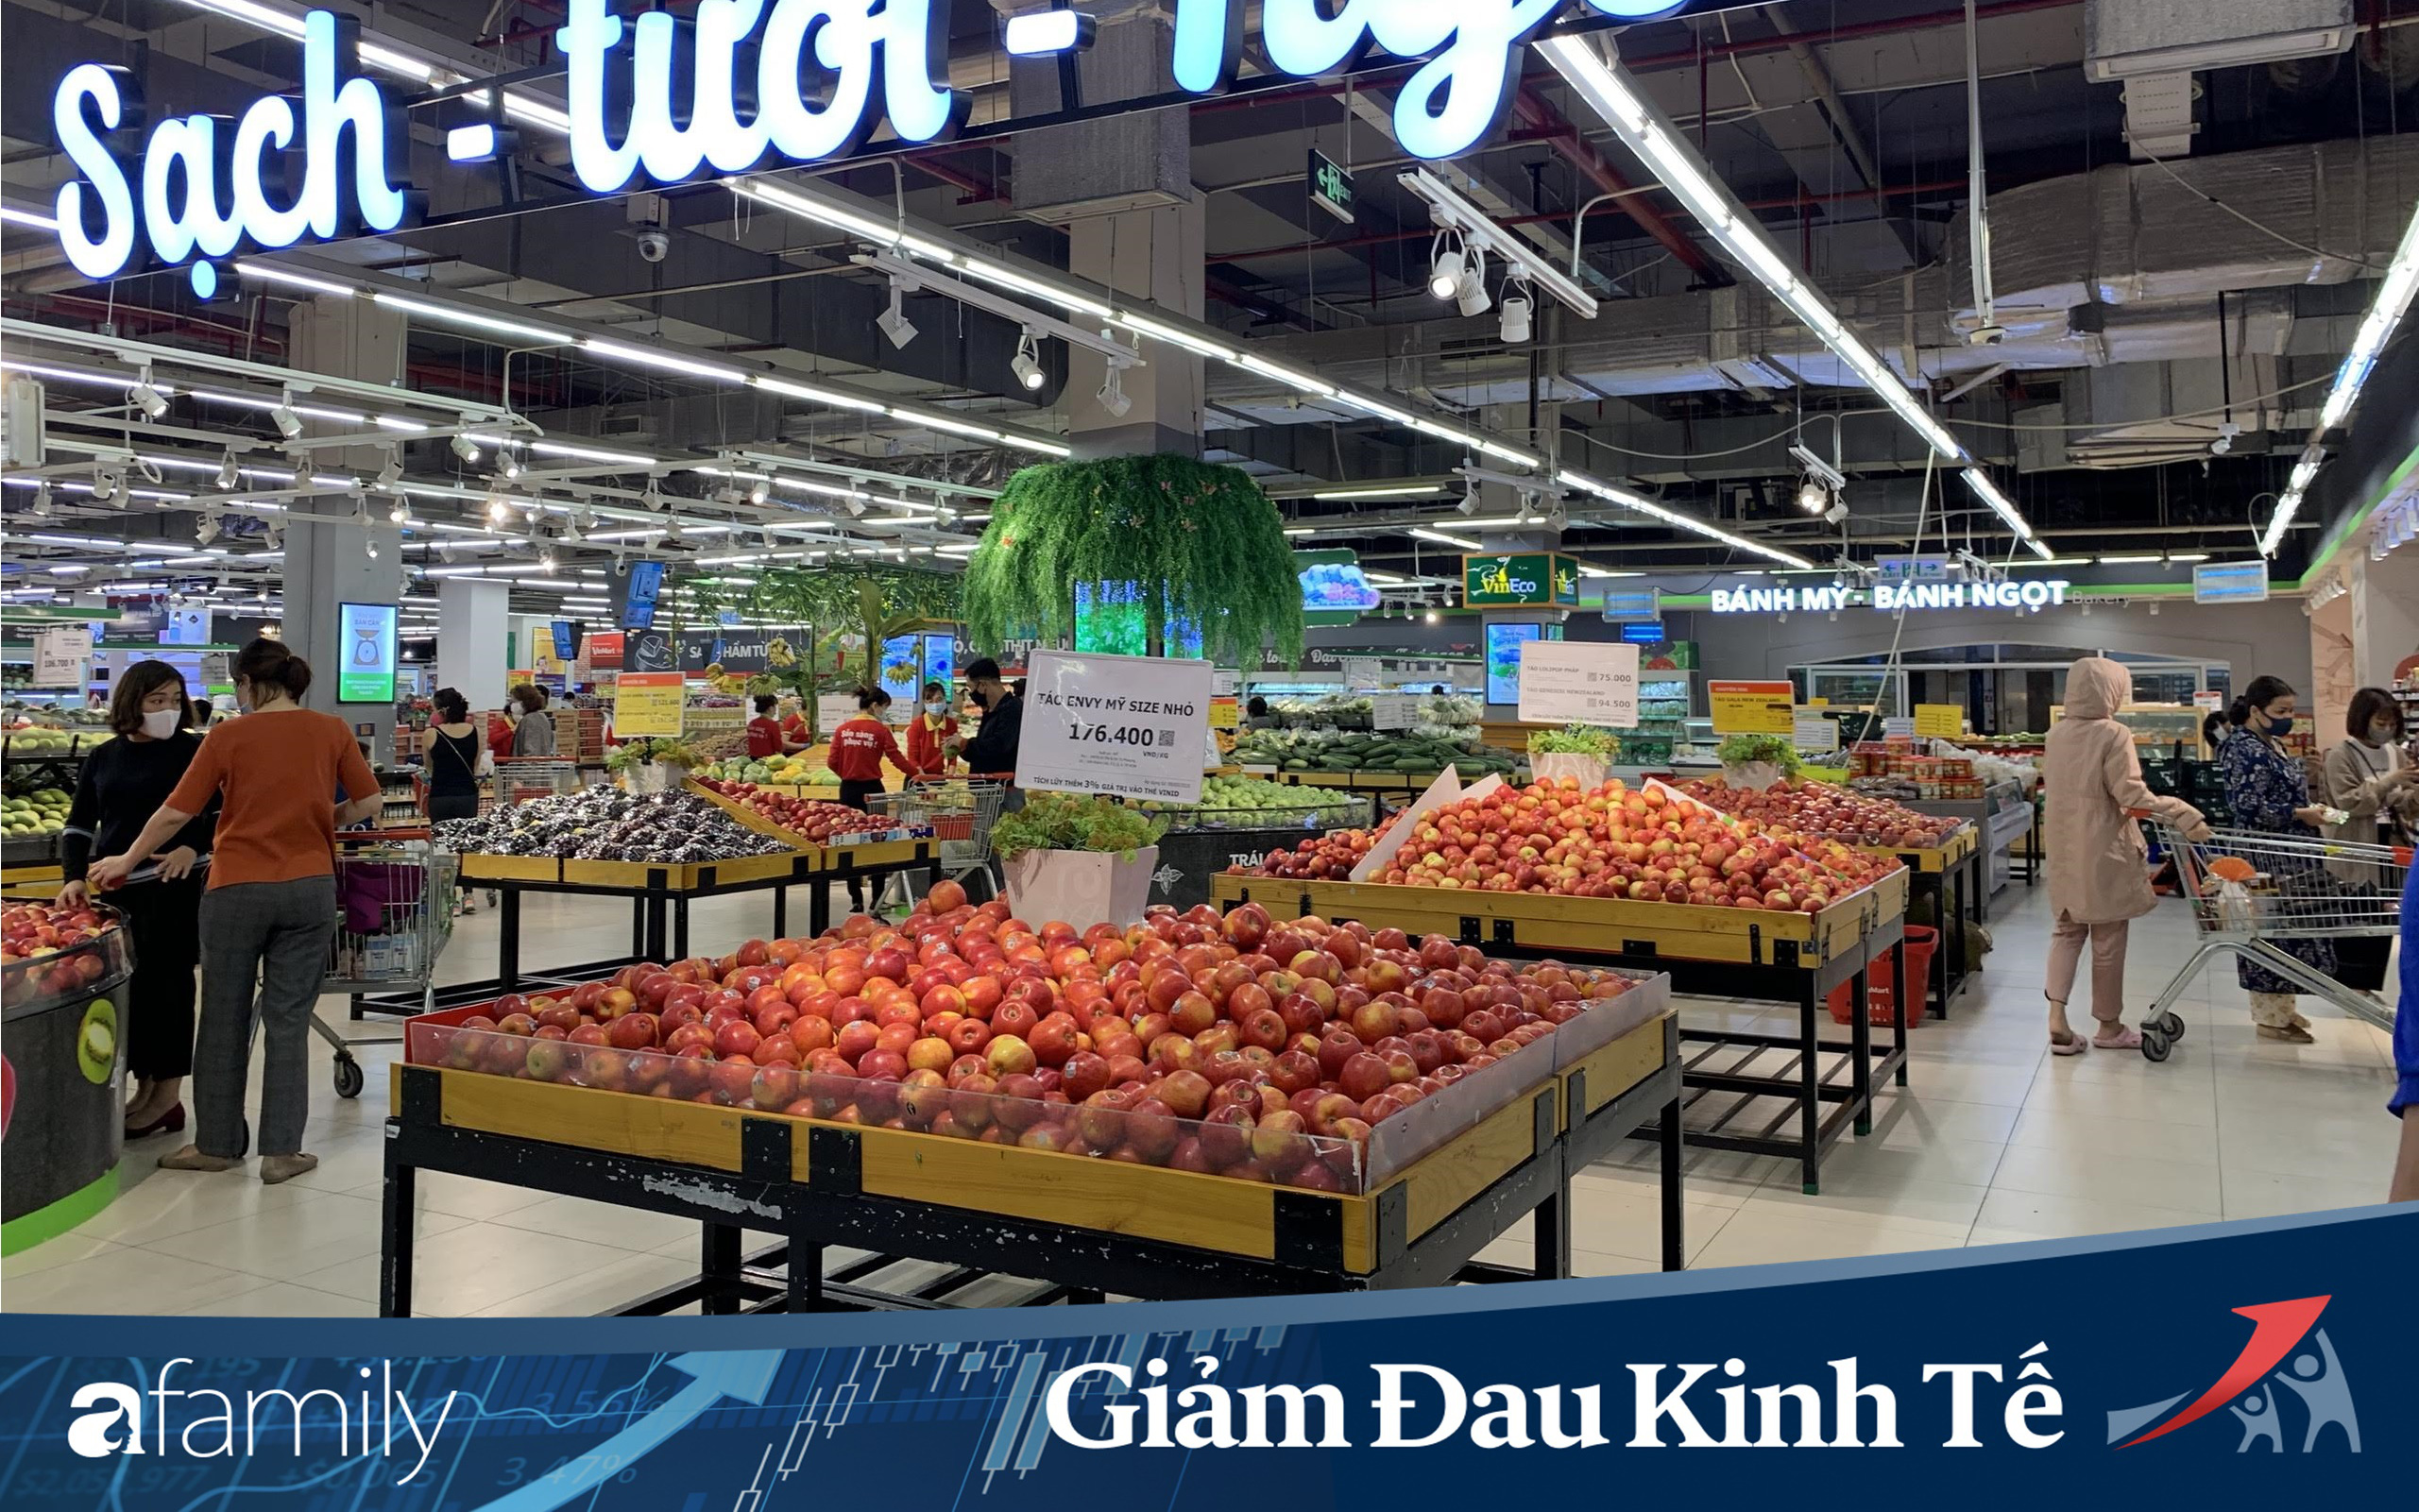 Hà Nội: Sau thông báo cách ly toàn xã hội, lương thực tại các siêu thị vẫn đầy ắp, thêm khoảng cách an toàn cho khách hàng tại quầy thanh toán